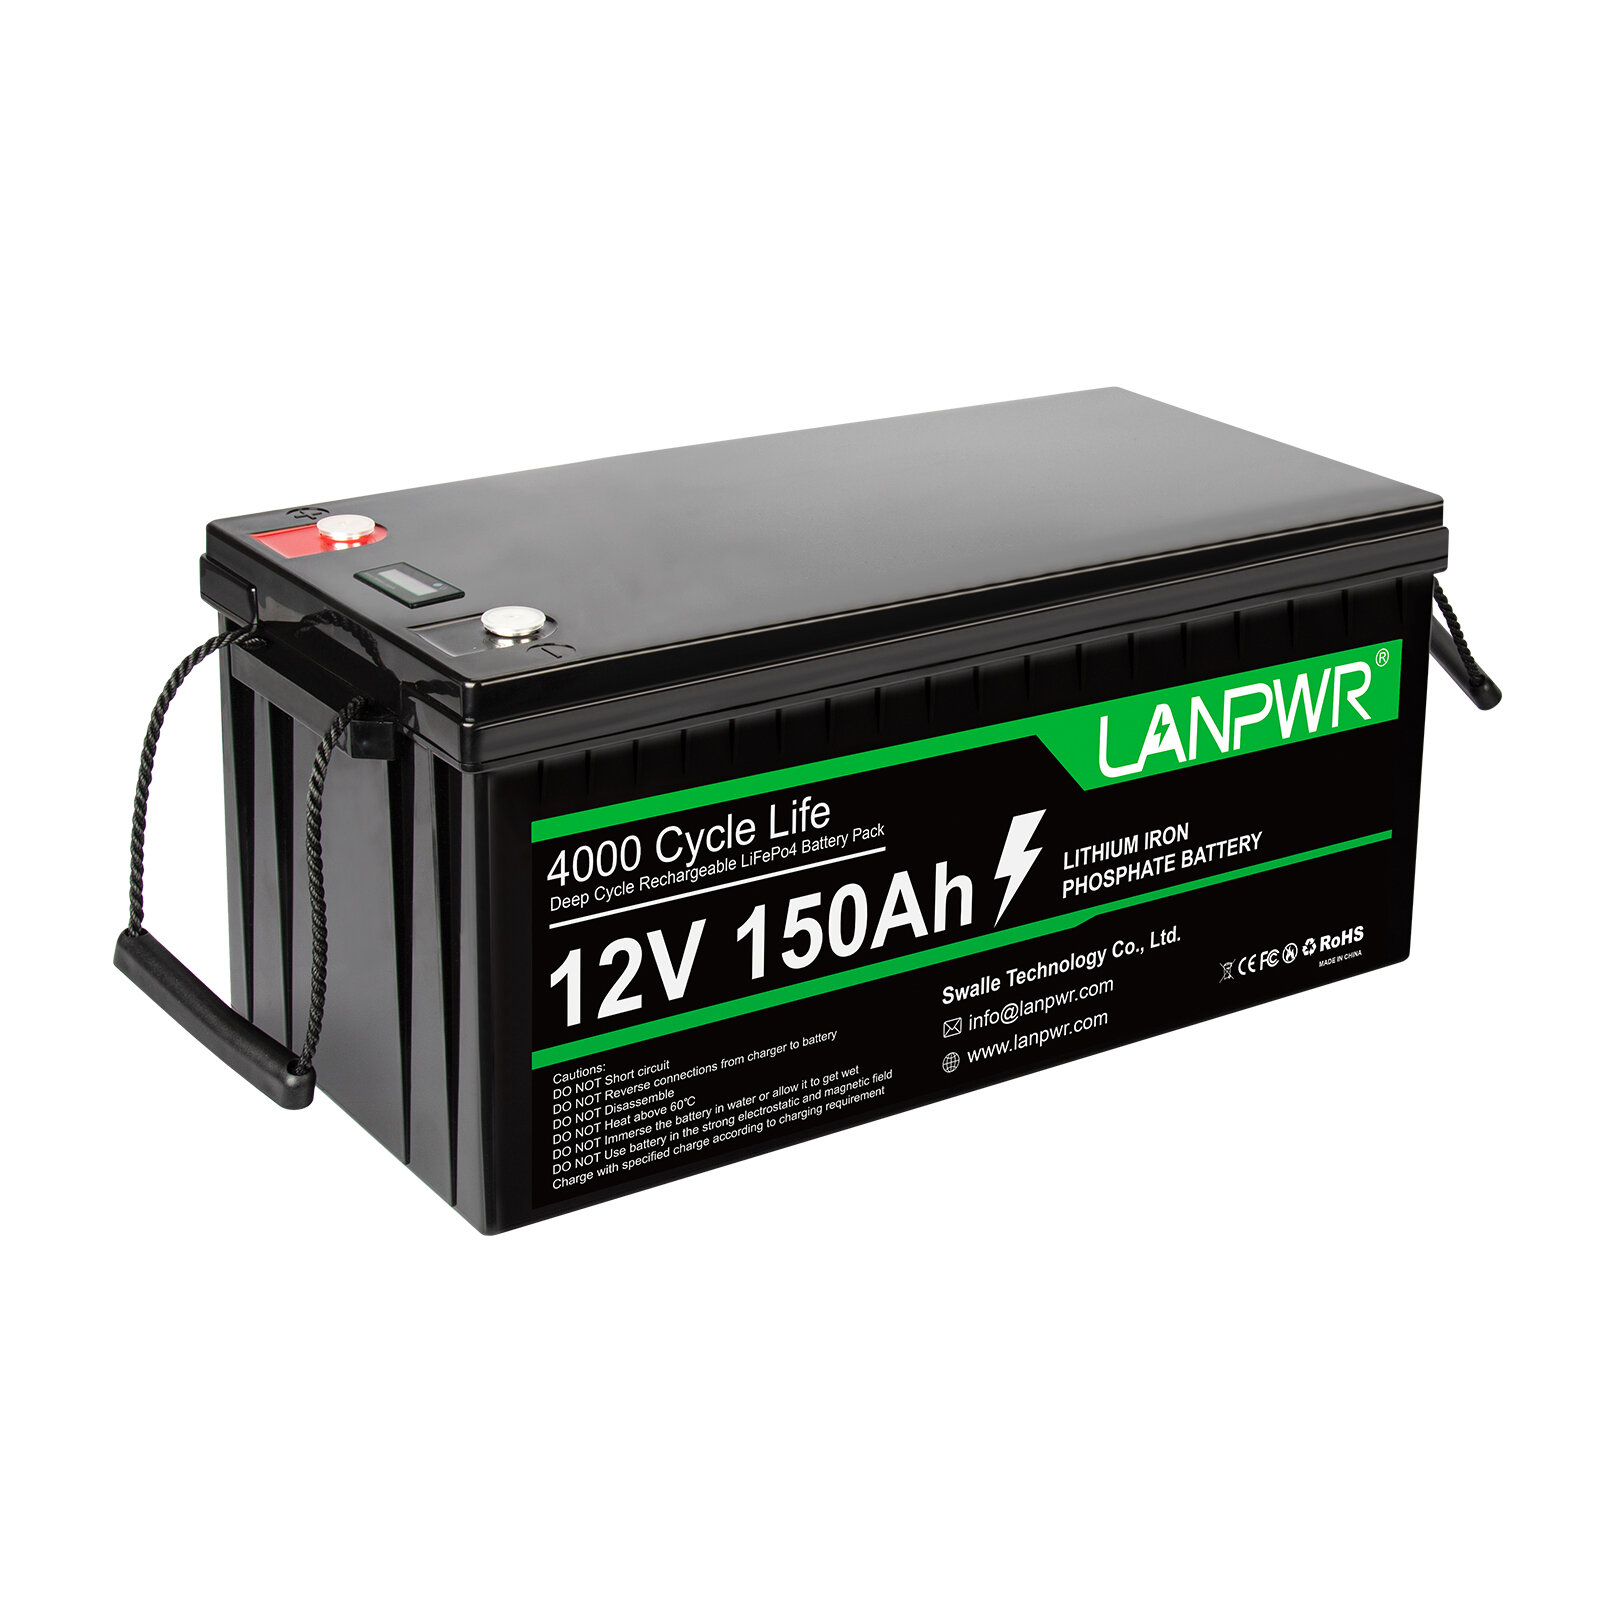 [EU Direct] Batteria LANPWR LiFePO4 da 12V e 150Ah, con una capacità di 1920Wh e una batteria al litio integrata di 100A BMS, resistente all'acqua con classificazione IP65, per sostituire la maggior parte delle fonti di energia di backup, stoccaggio di e